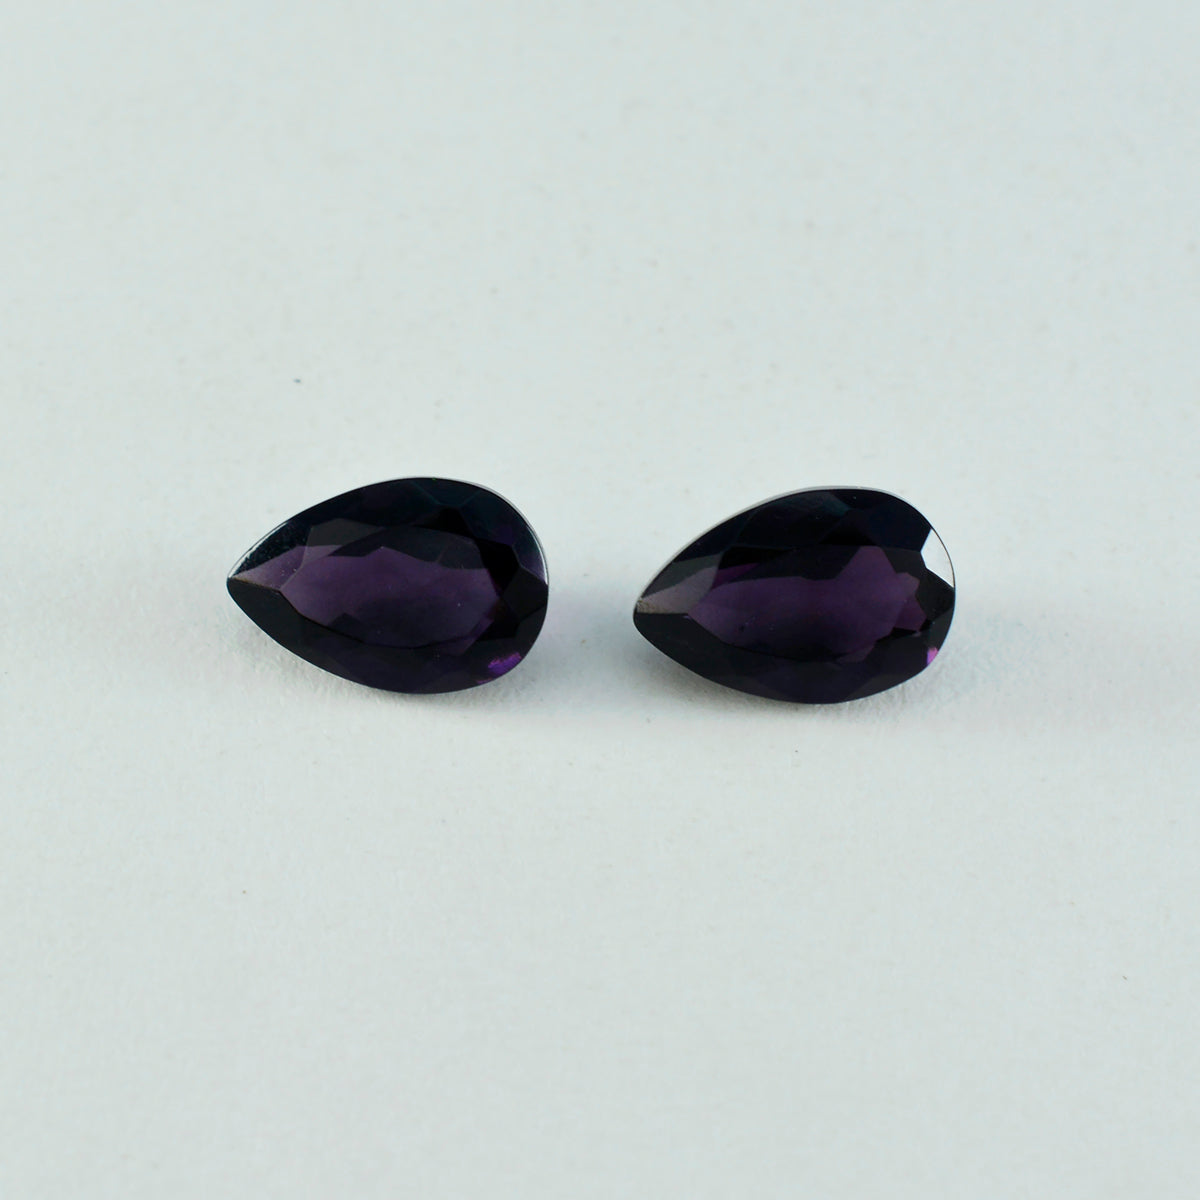 riyogems 1 шт. фиолетовый аметист cz граненый 6x9 мм грушевидной формы качественный драгоценный камень